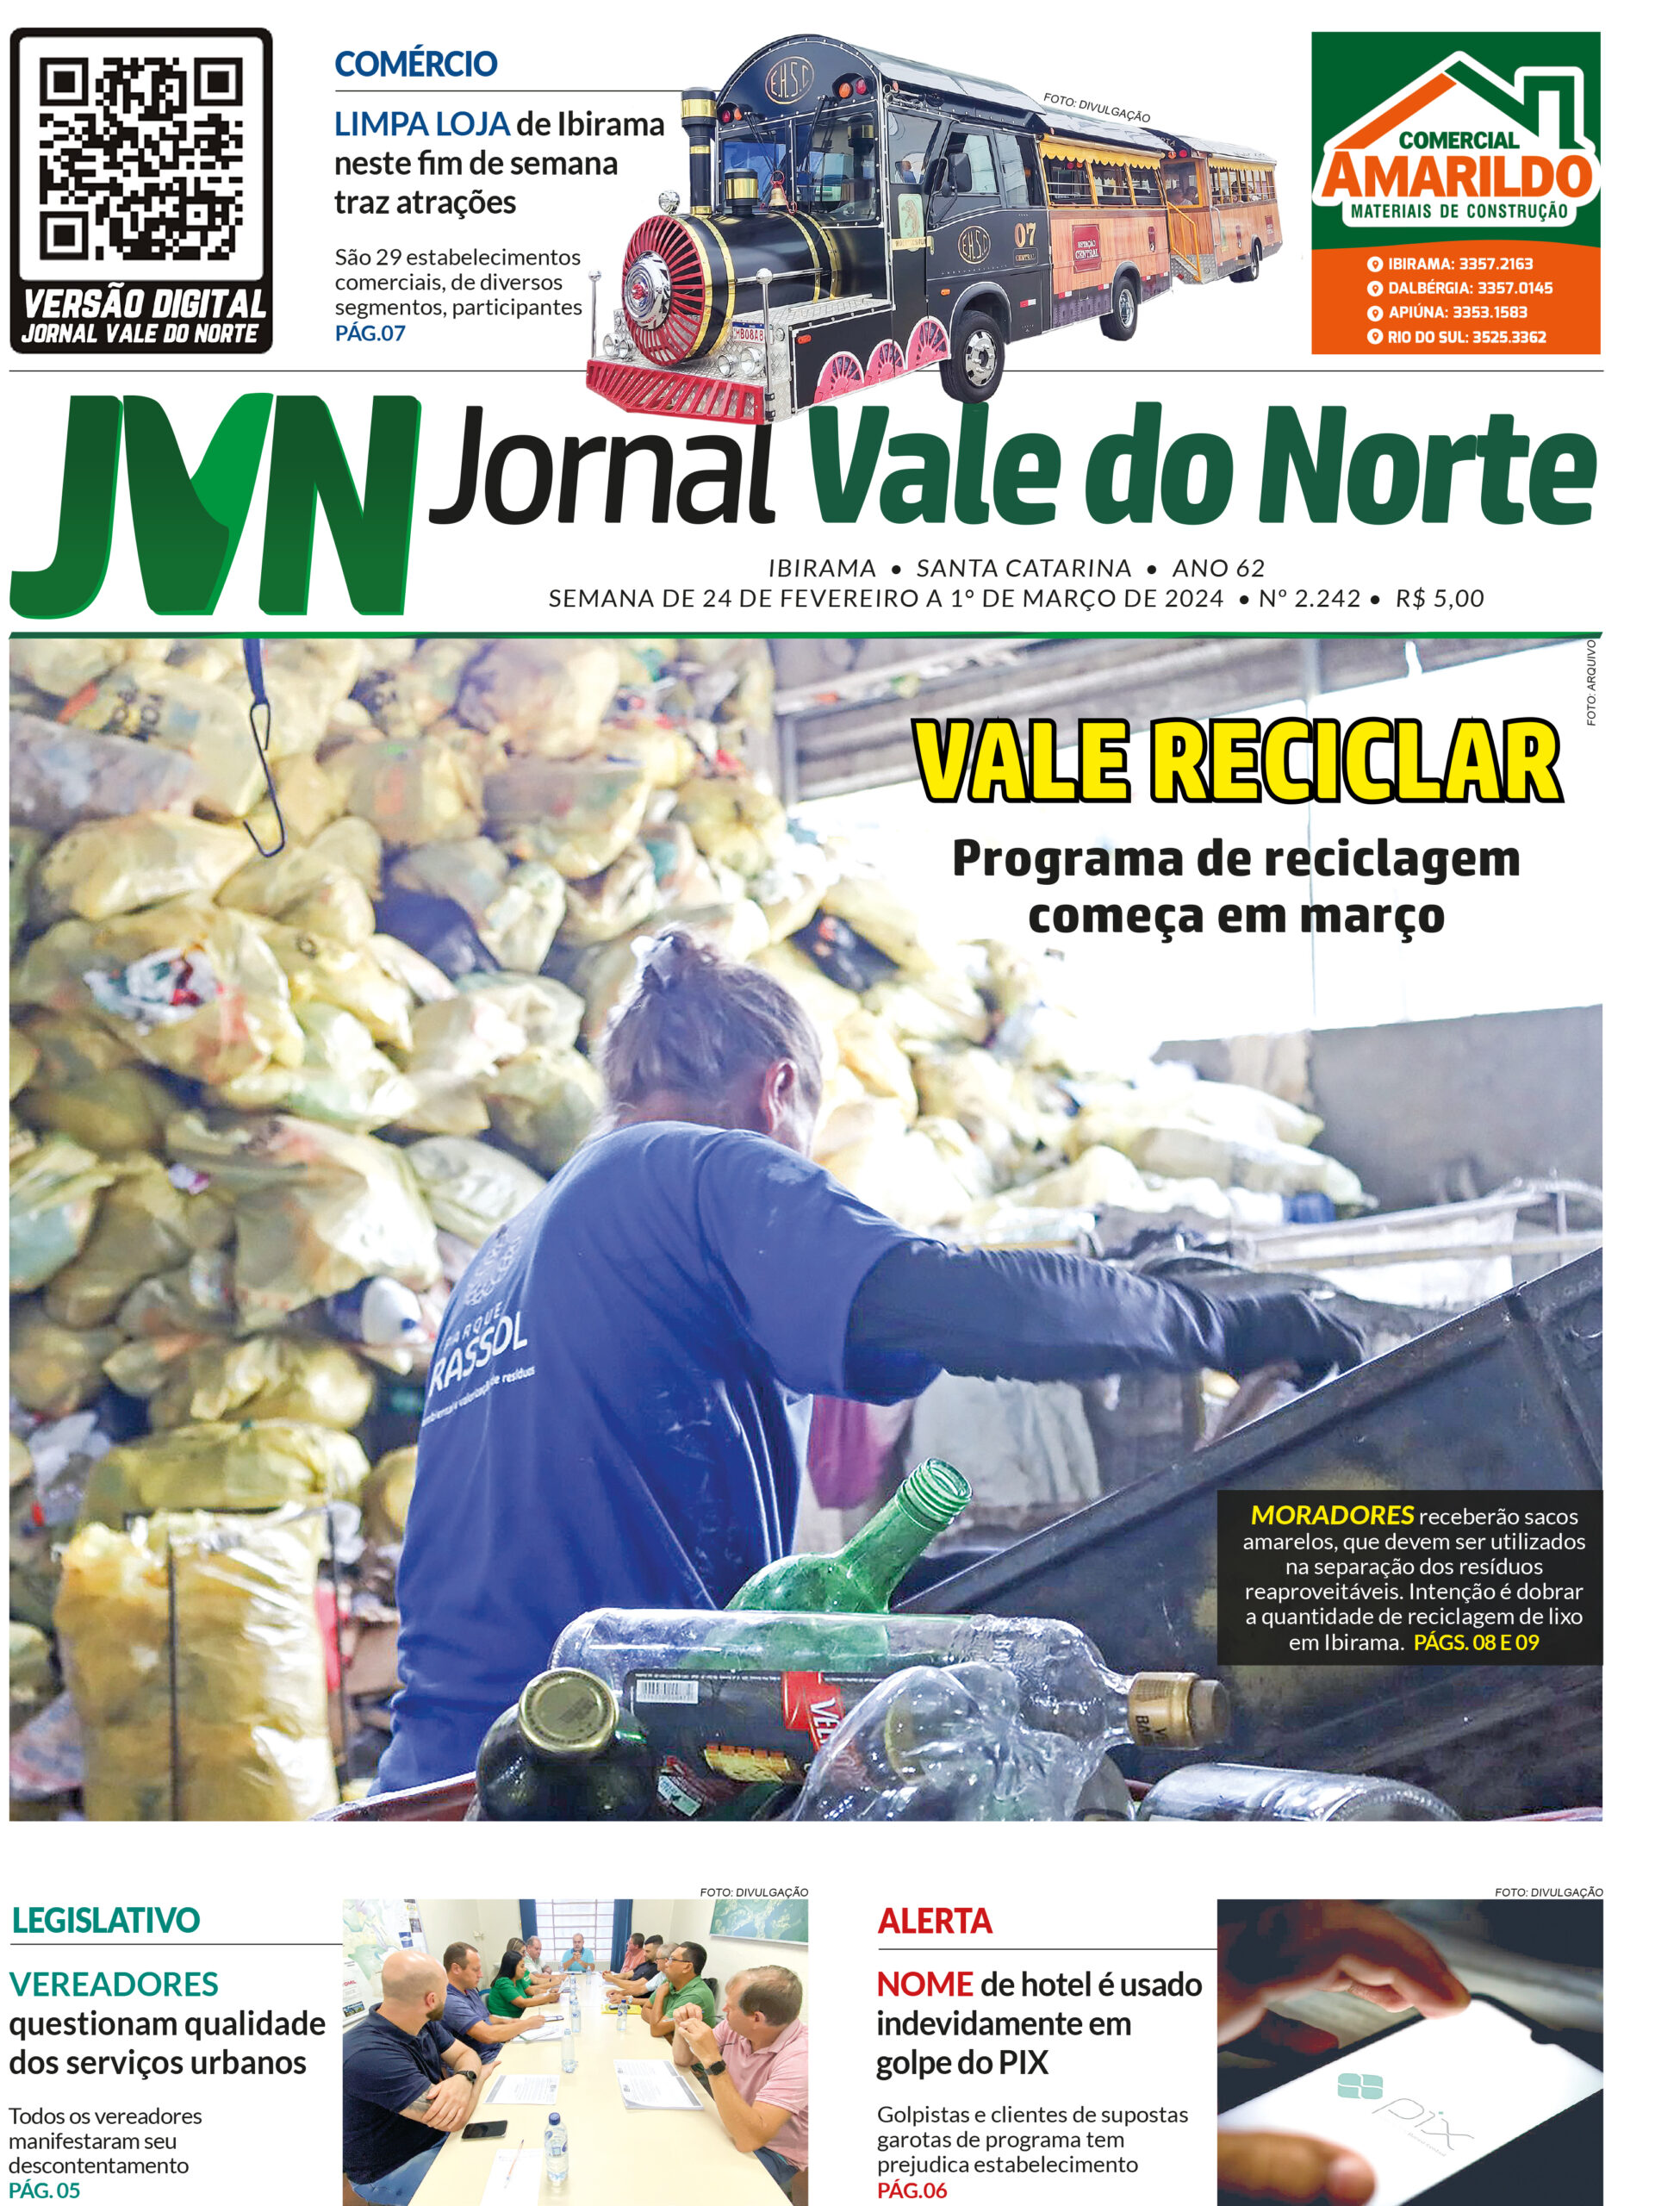 JORNAL VALE DO NORTE DE 24 DE FEVEREIRO A 1 DE MARÇO